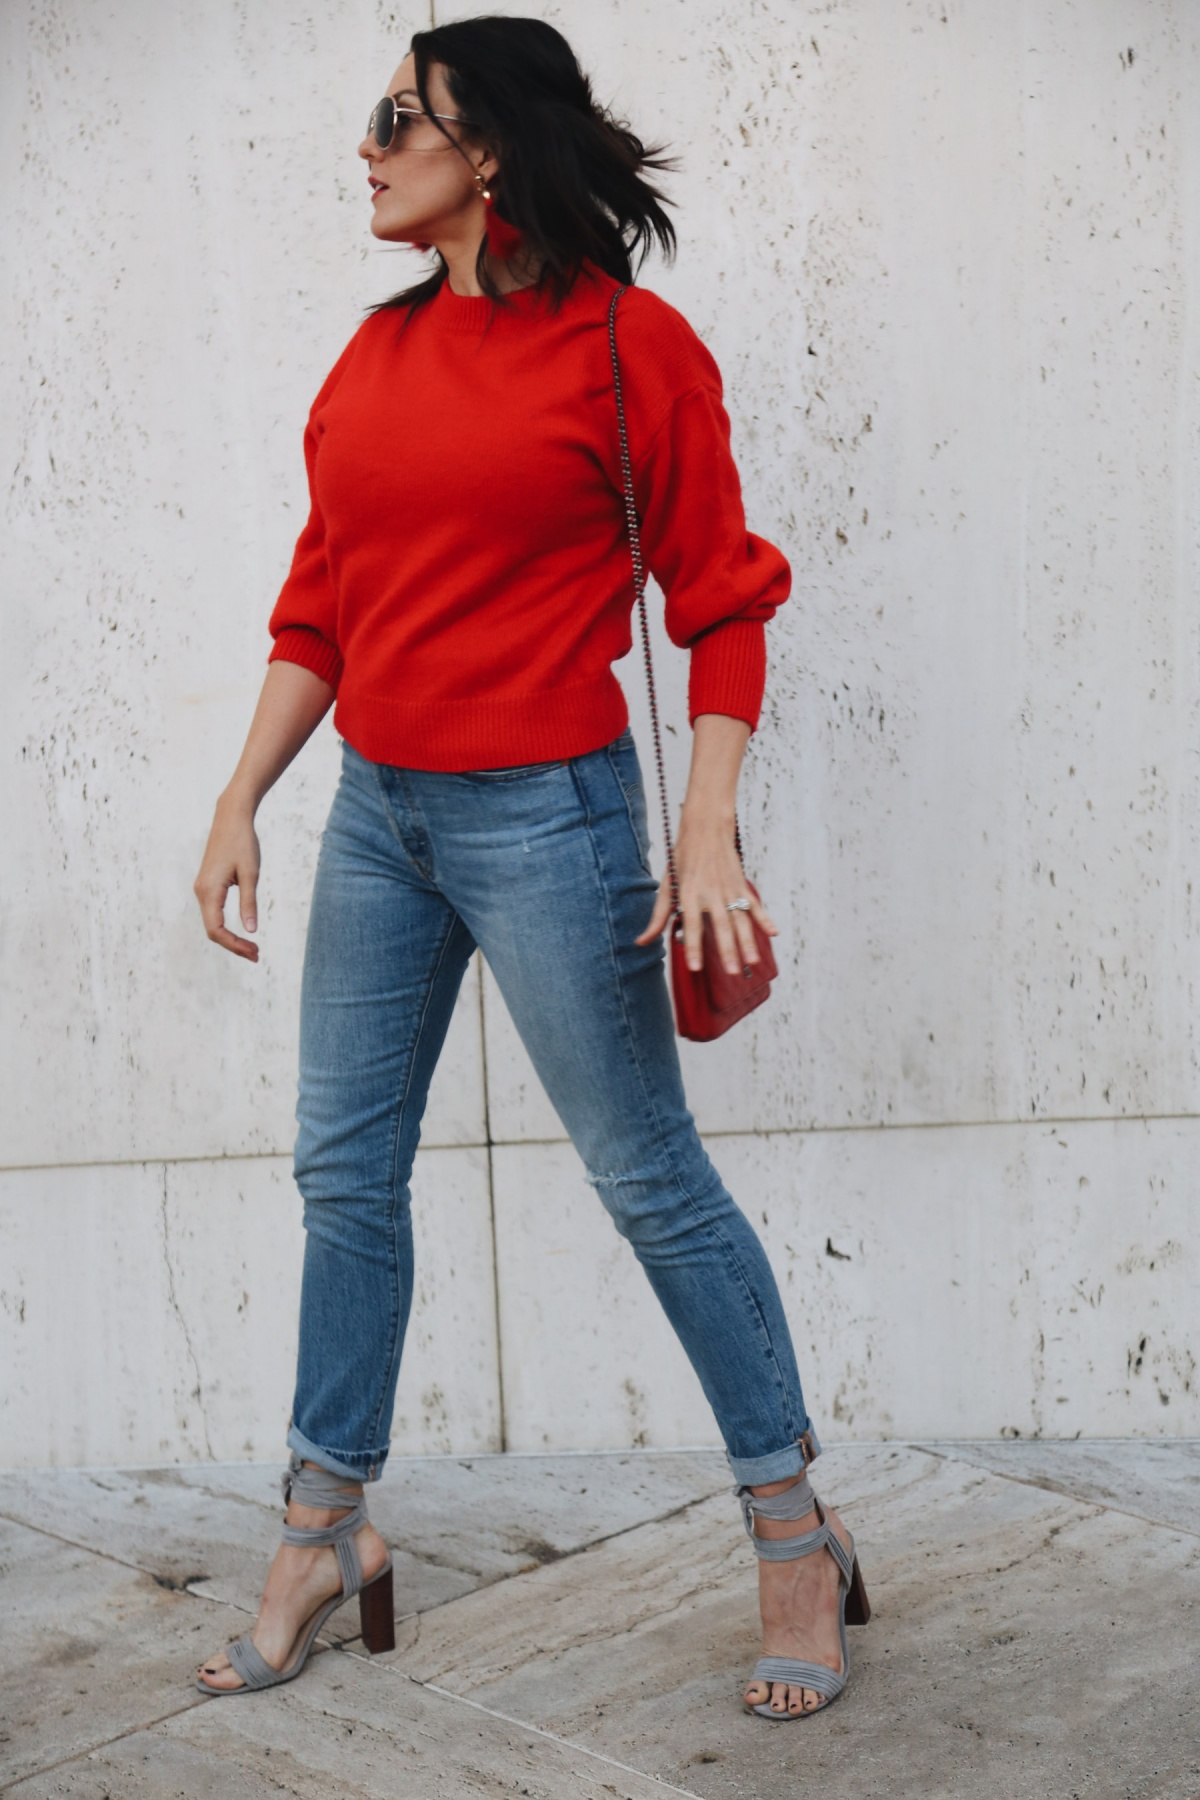 maglietta rossa felpa sportiva abbinata a jeans